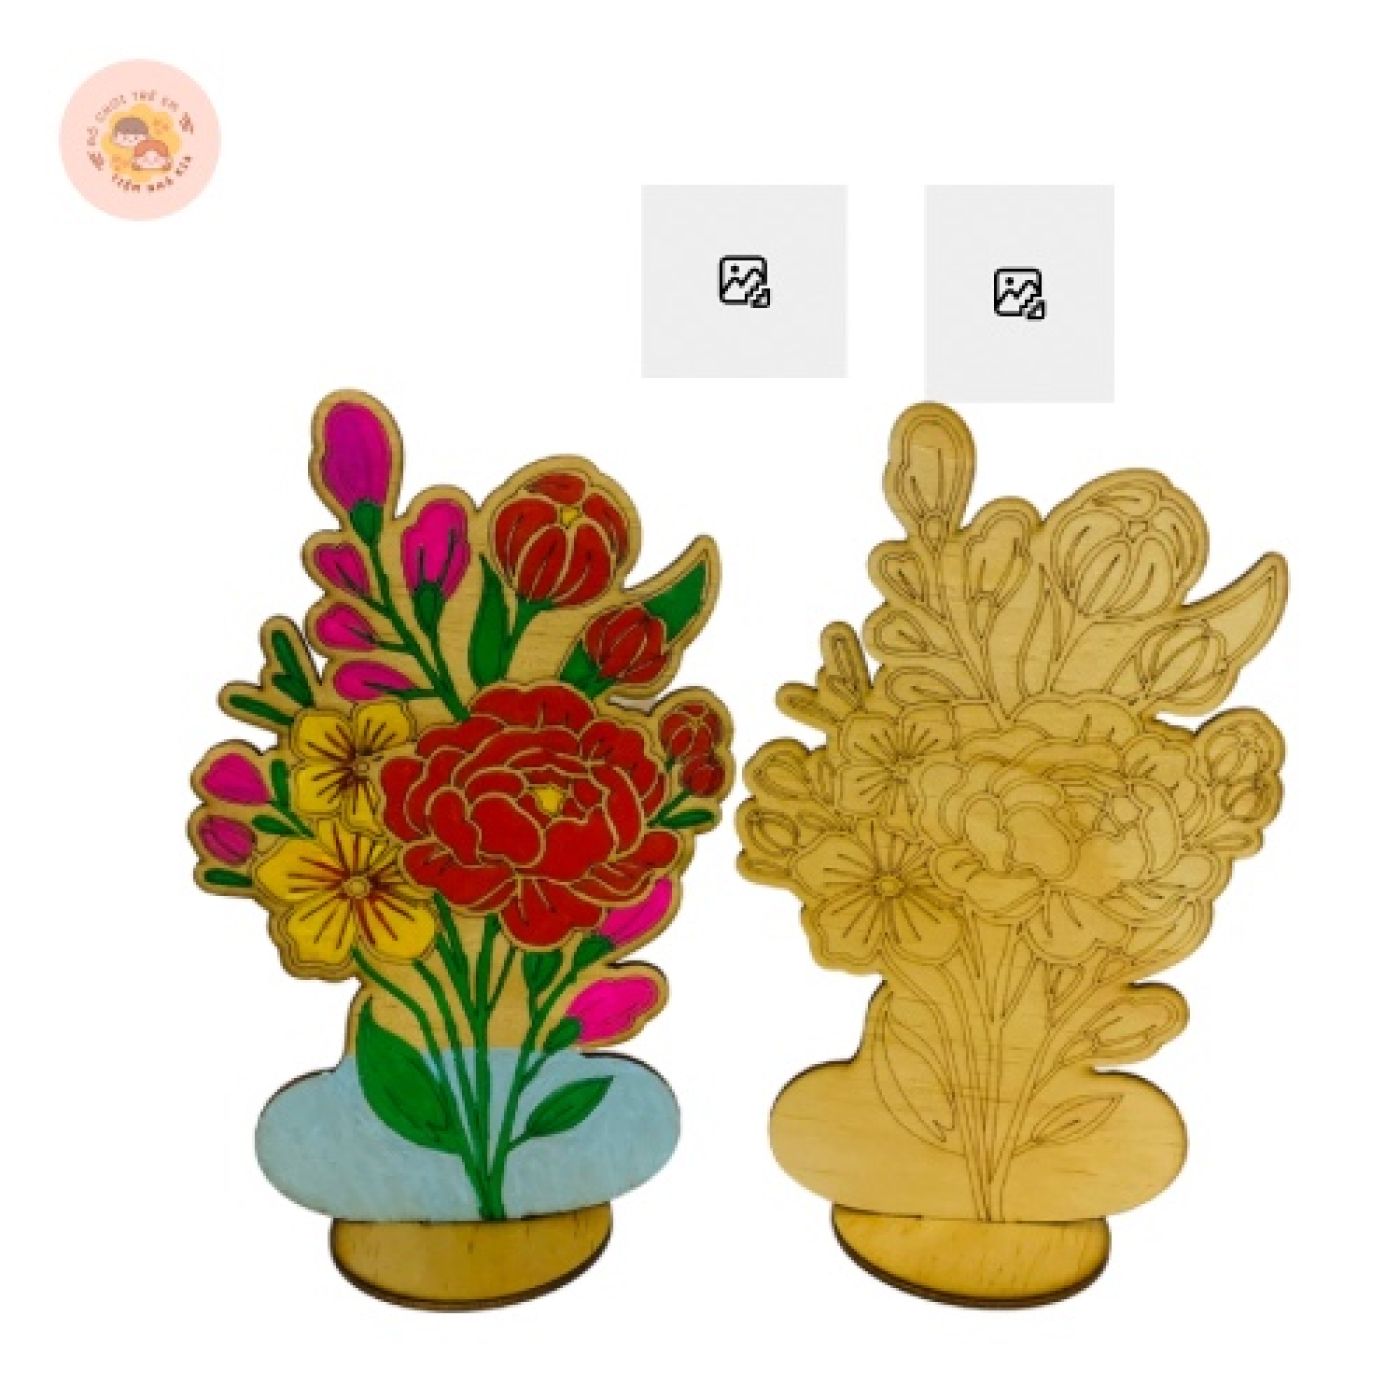 [Loại to] Hoa gỗ tô màu DIY kích thước 20*25cm giúp bé thoả sức sáng tạo_Có thể làm quà tặng, decor